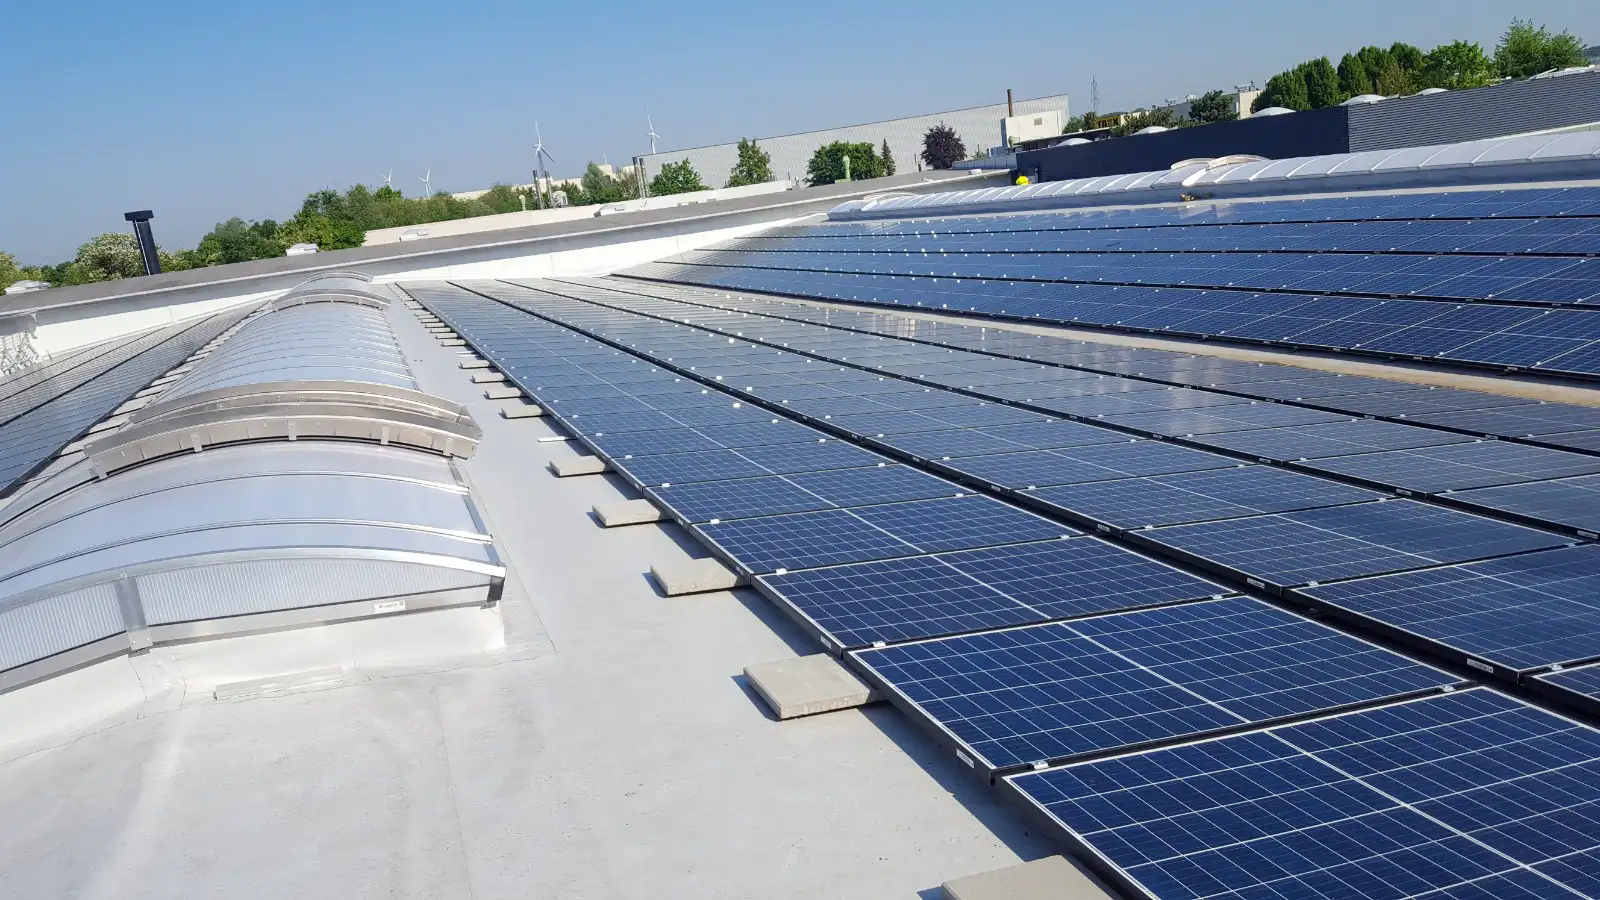 Solarmodule für erneuerbare Energie auf einem Dach bei blauem Himmel